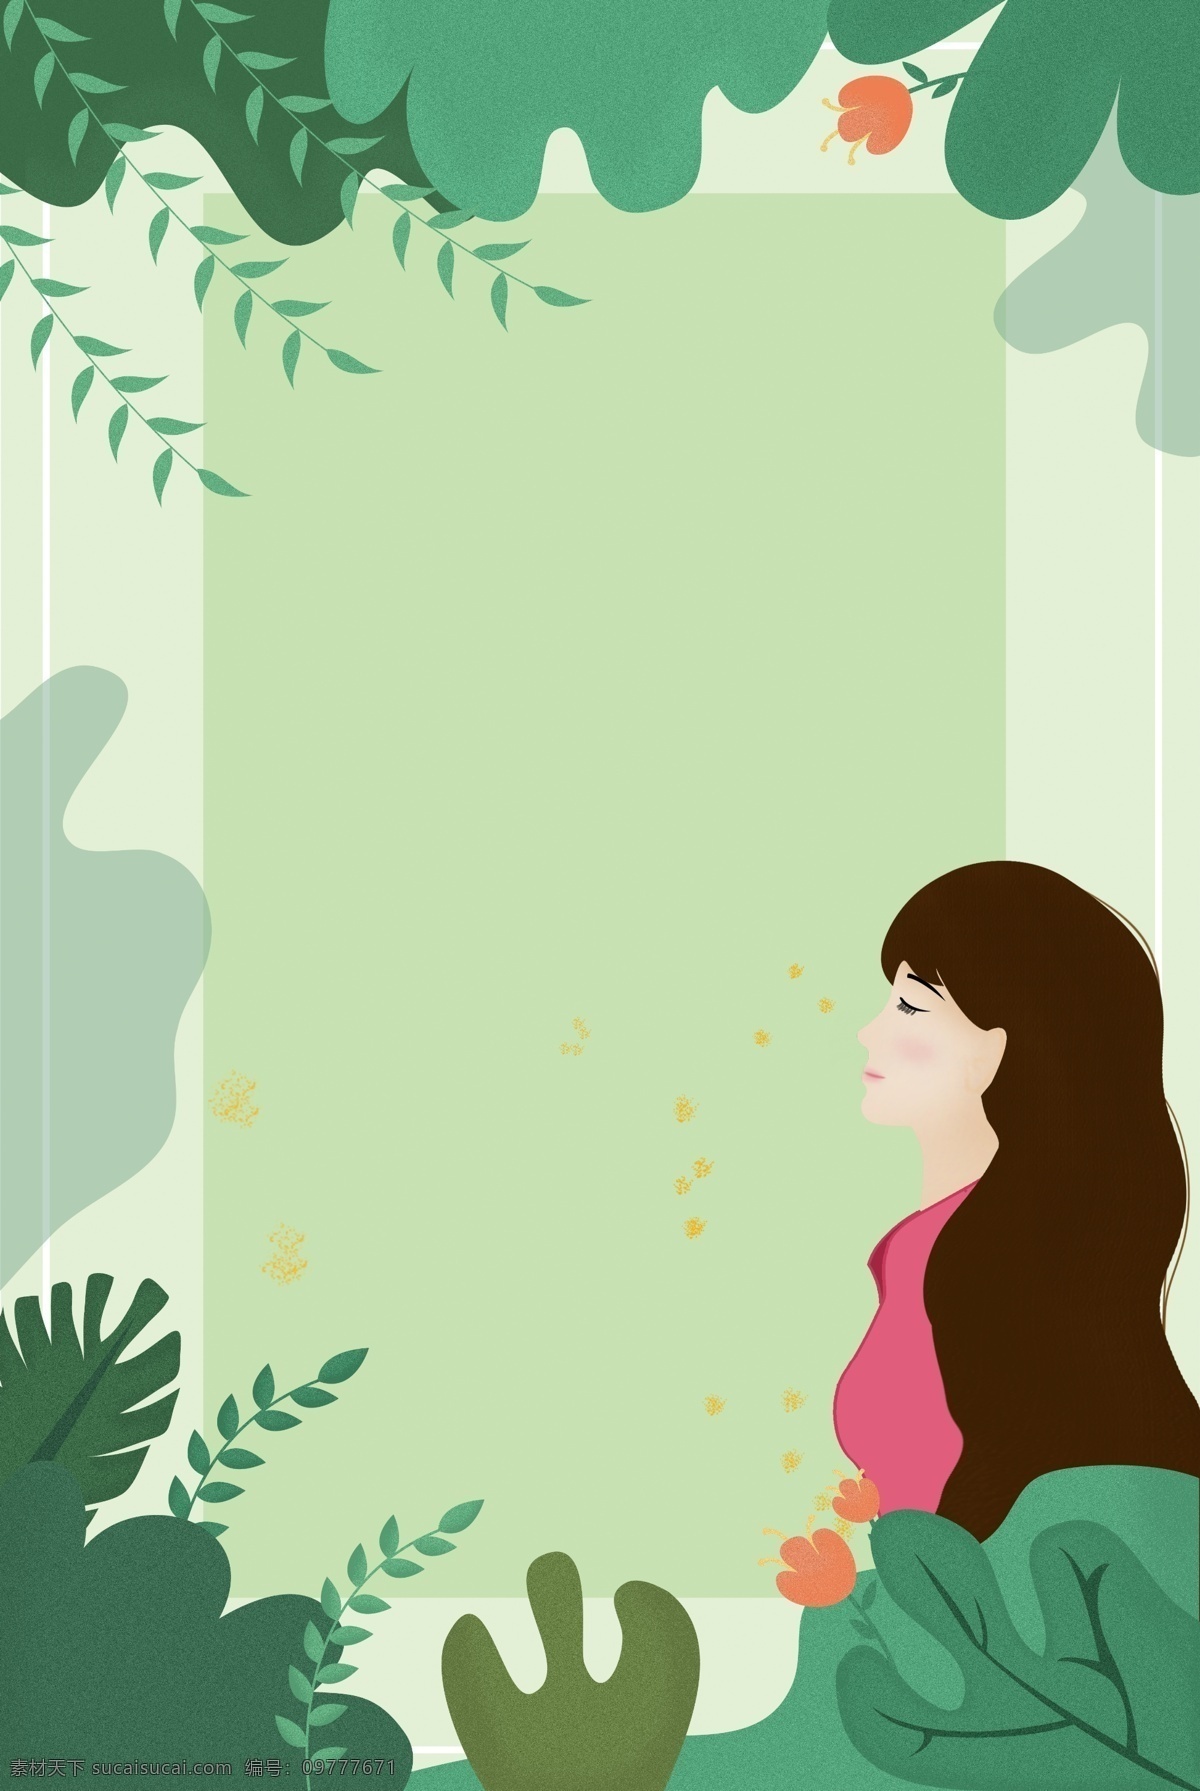 春夏 上 新 女装 海报 背景 夏日海报 绿色背景 植物自然 植物画 夏季促销 上新 女孩 插画